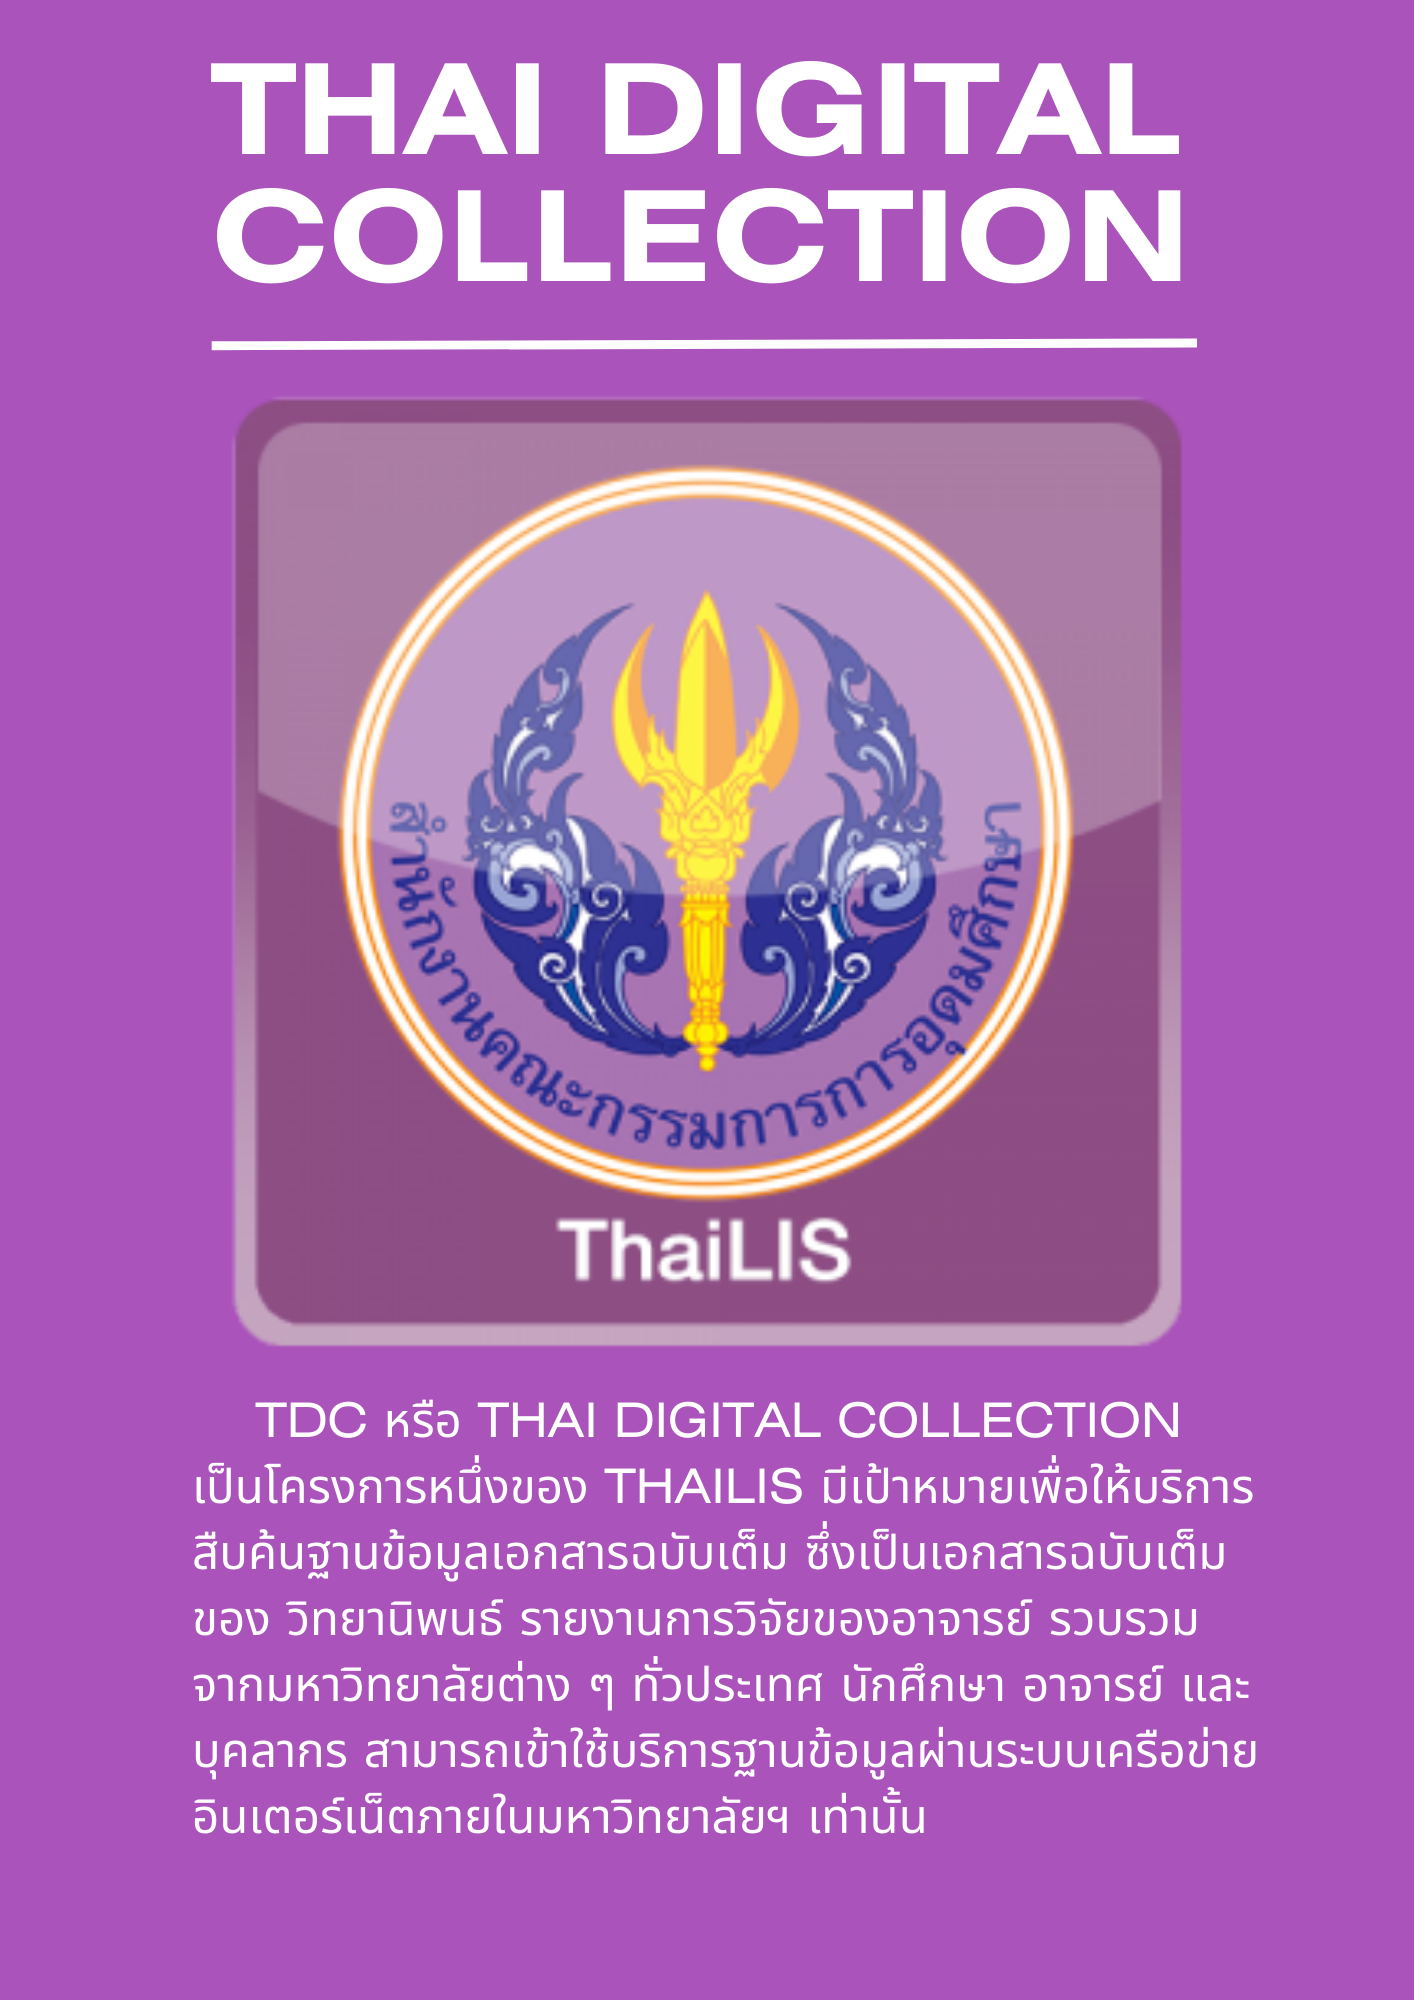 2. แนะนำฐานข้อมูล TDC หรือ Thai Digital Collection